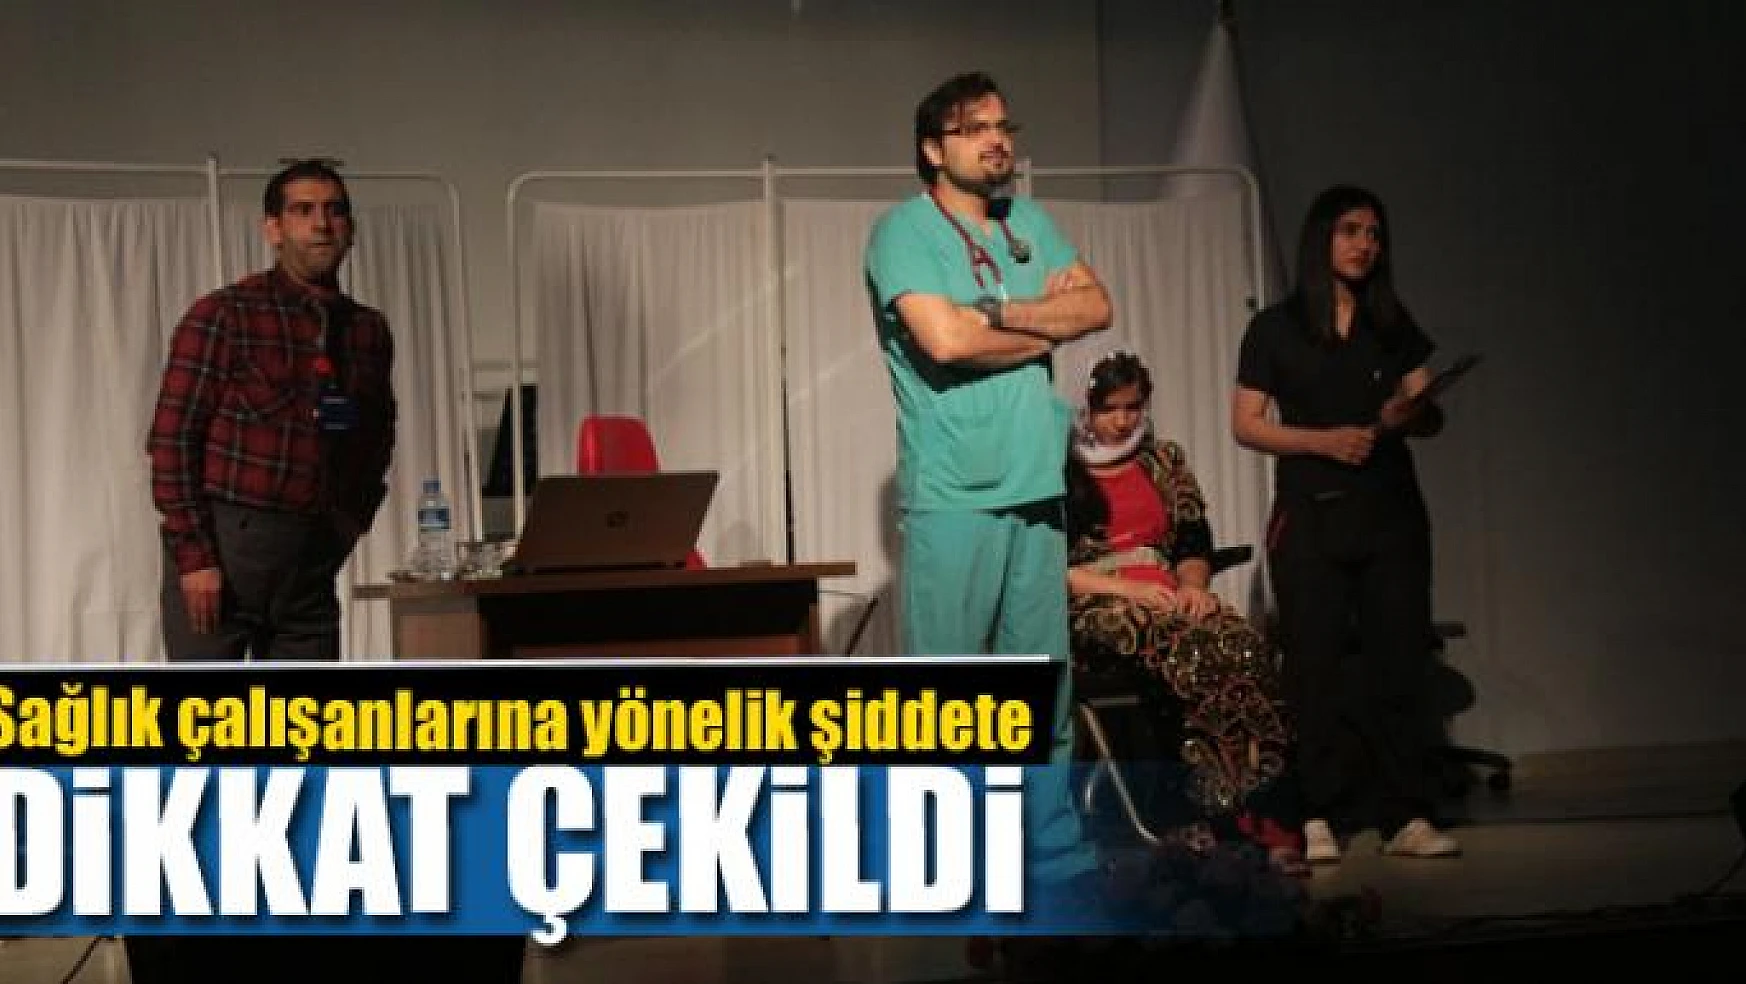 Tiyatro oyunuyla sağlık çalışanlarına yönelik şiddete dikkat çekildi